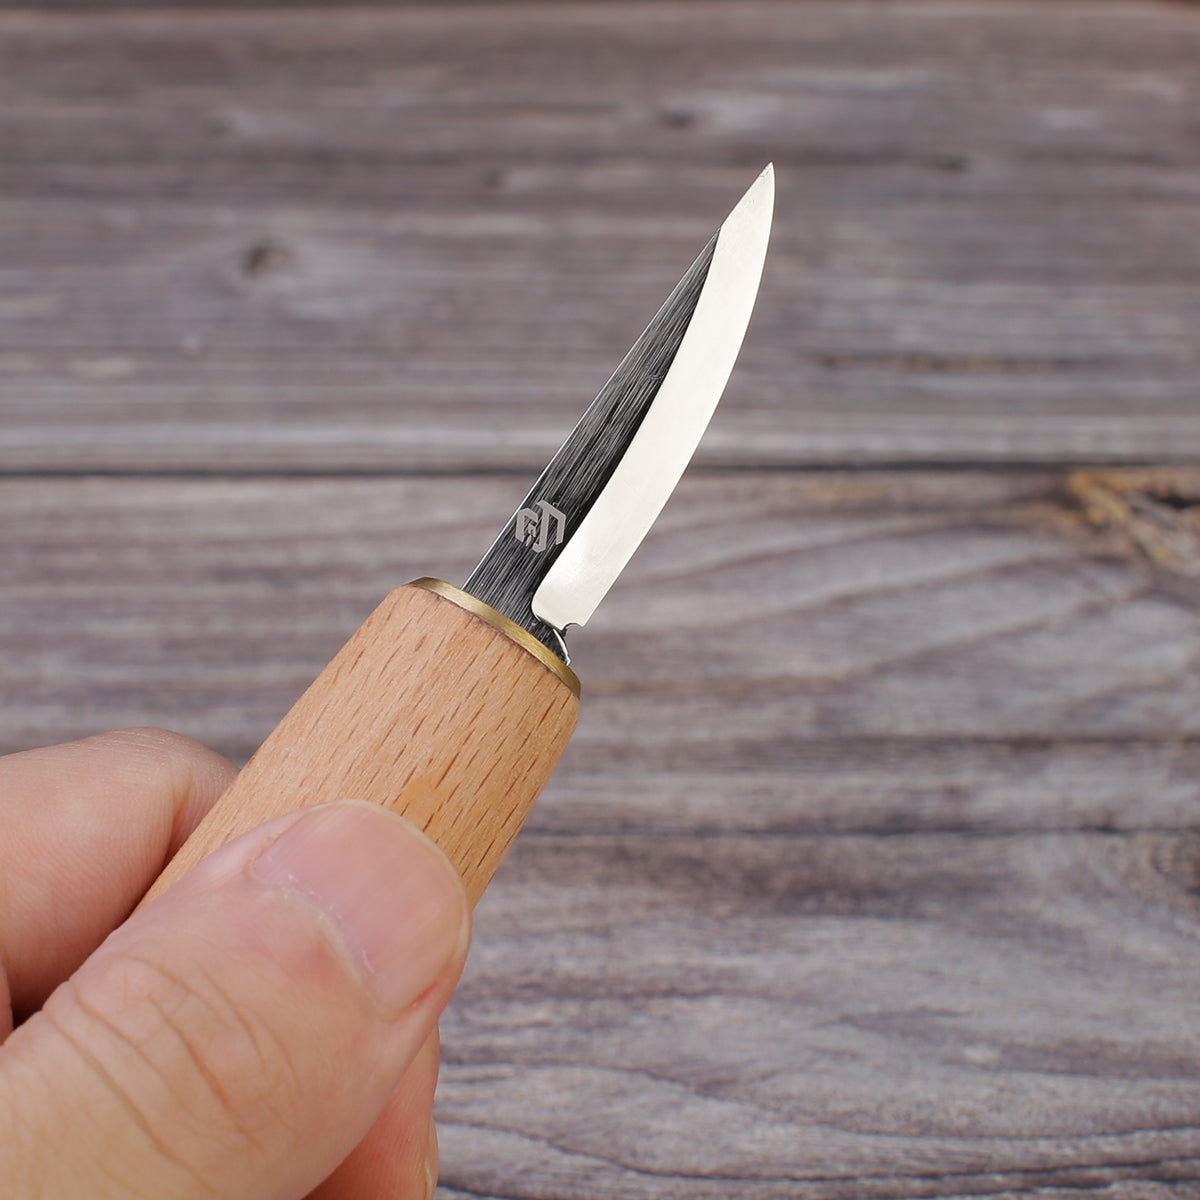 BeaverCraft Whittling Knife C13, wood carving knife